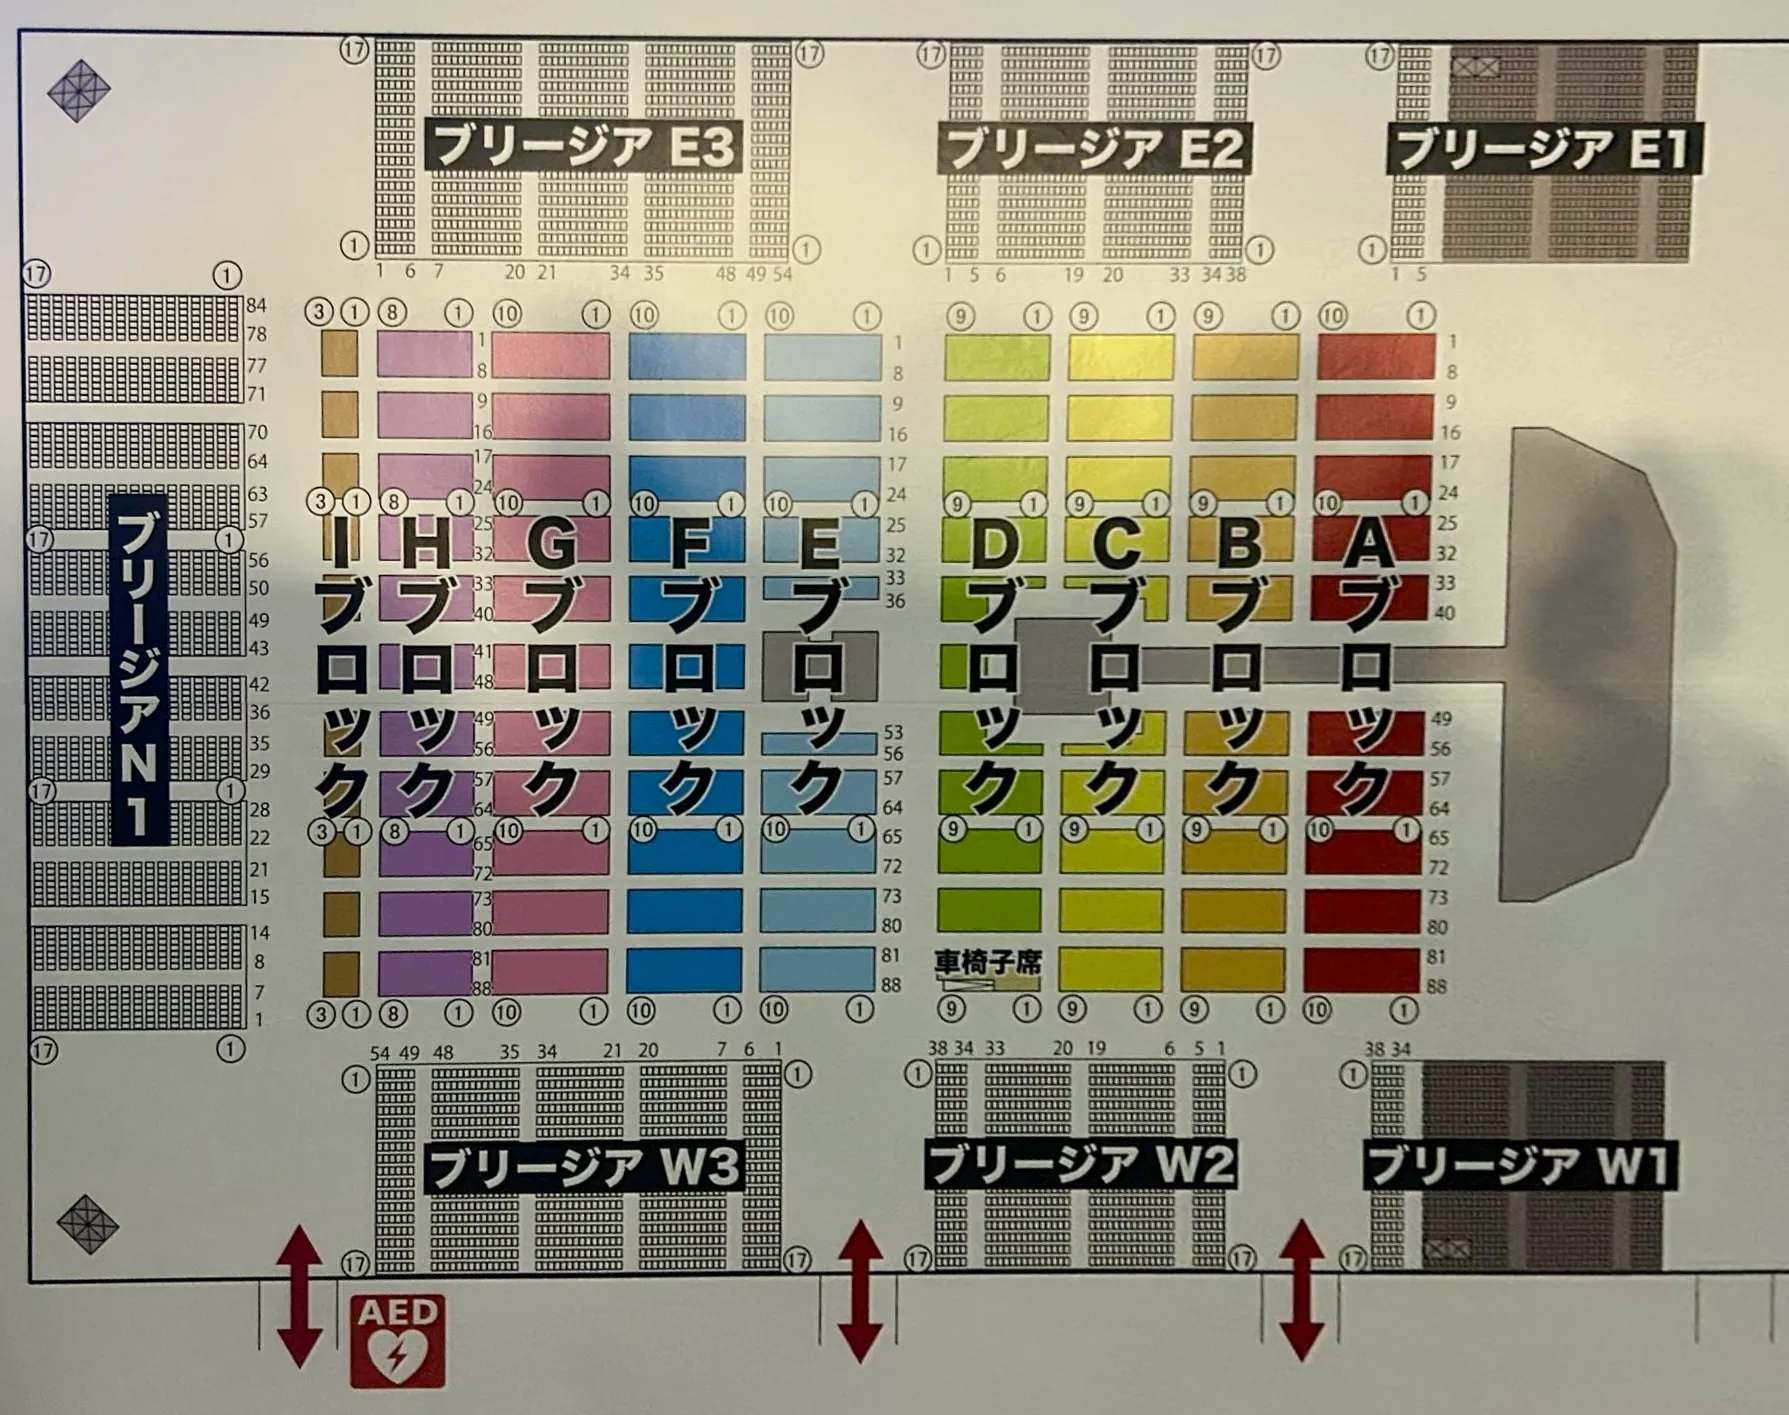 BUMP OF CHICKEN ライブ「ホームシック衛星 2024」愛知(名古屋)・ポートメッセなごや第一展示館の座席表